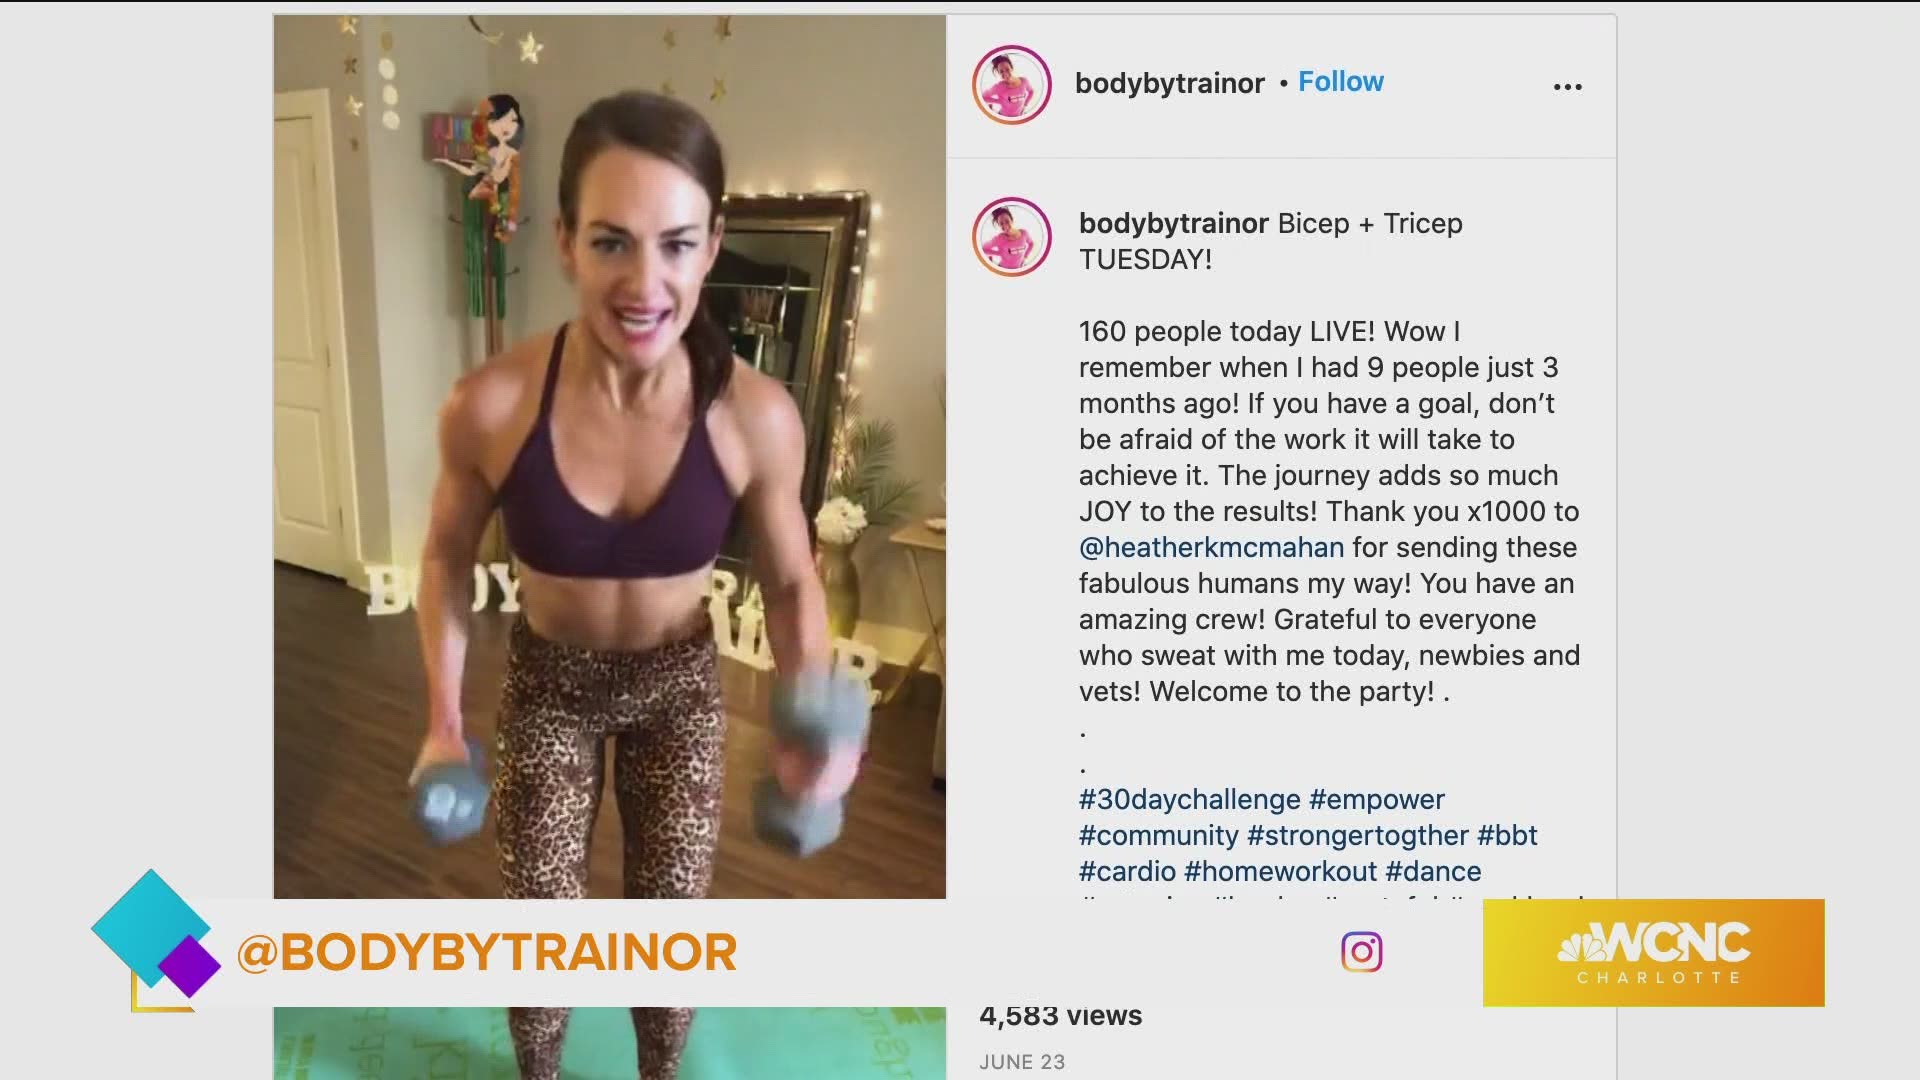 @BodybyTrainor shares ways to achieve your goals